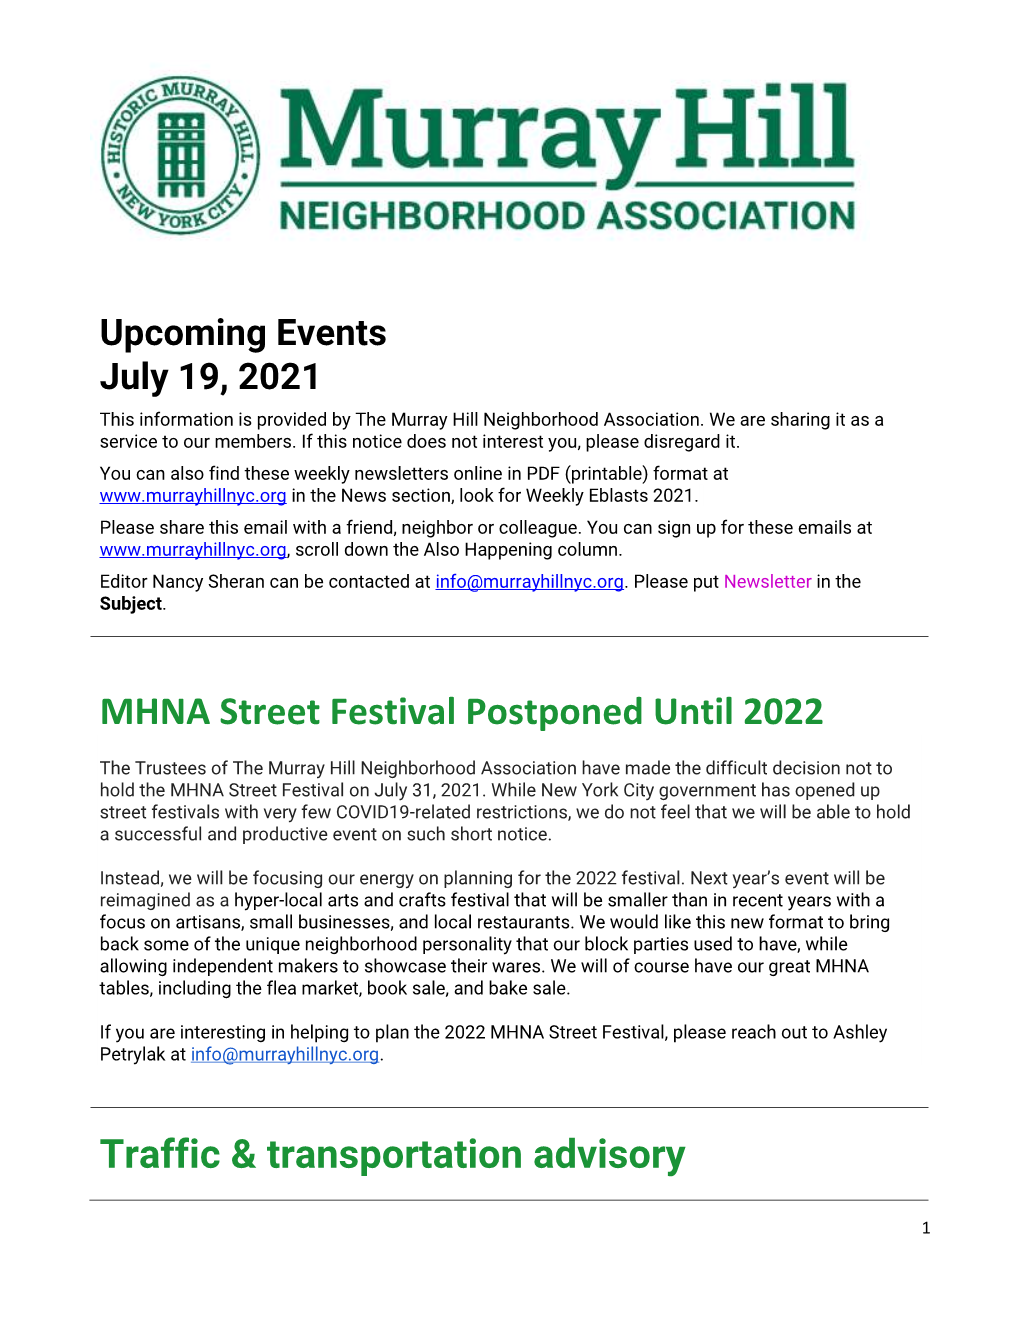 MHNA Street Festival Postponed Until 2022 Traffic & Transportation Advisory